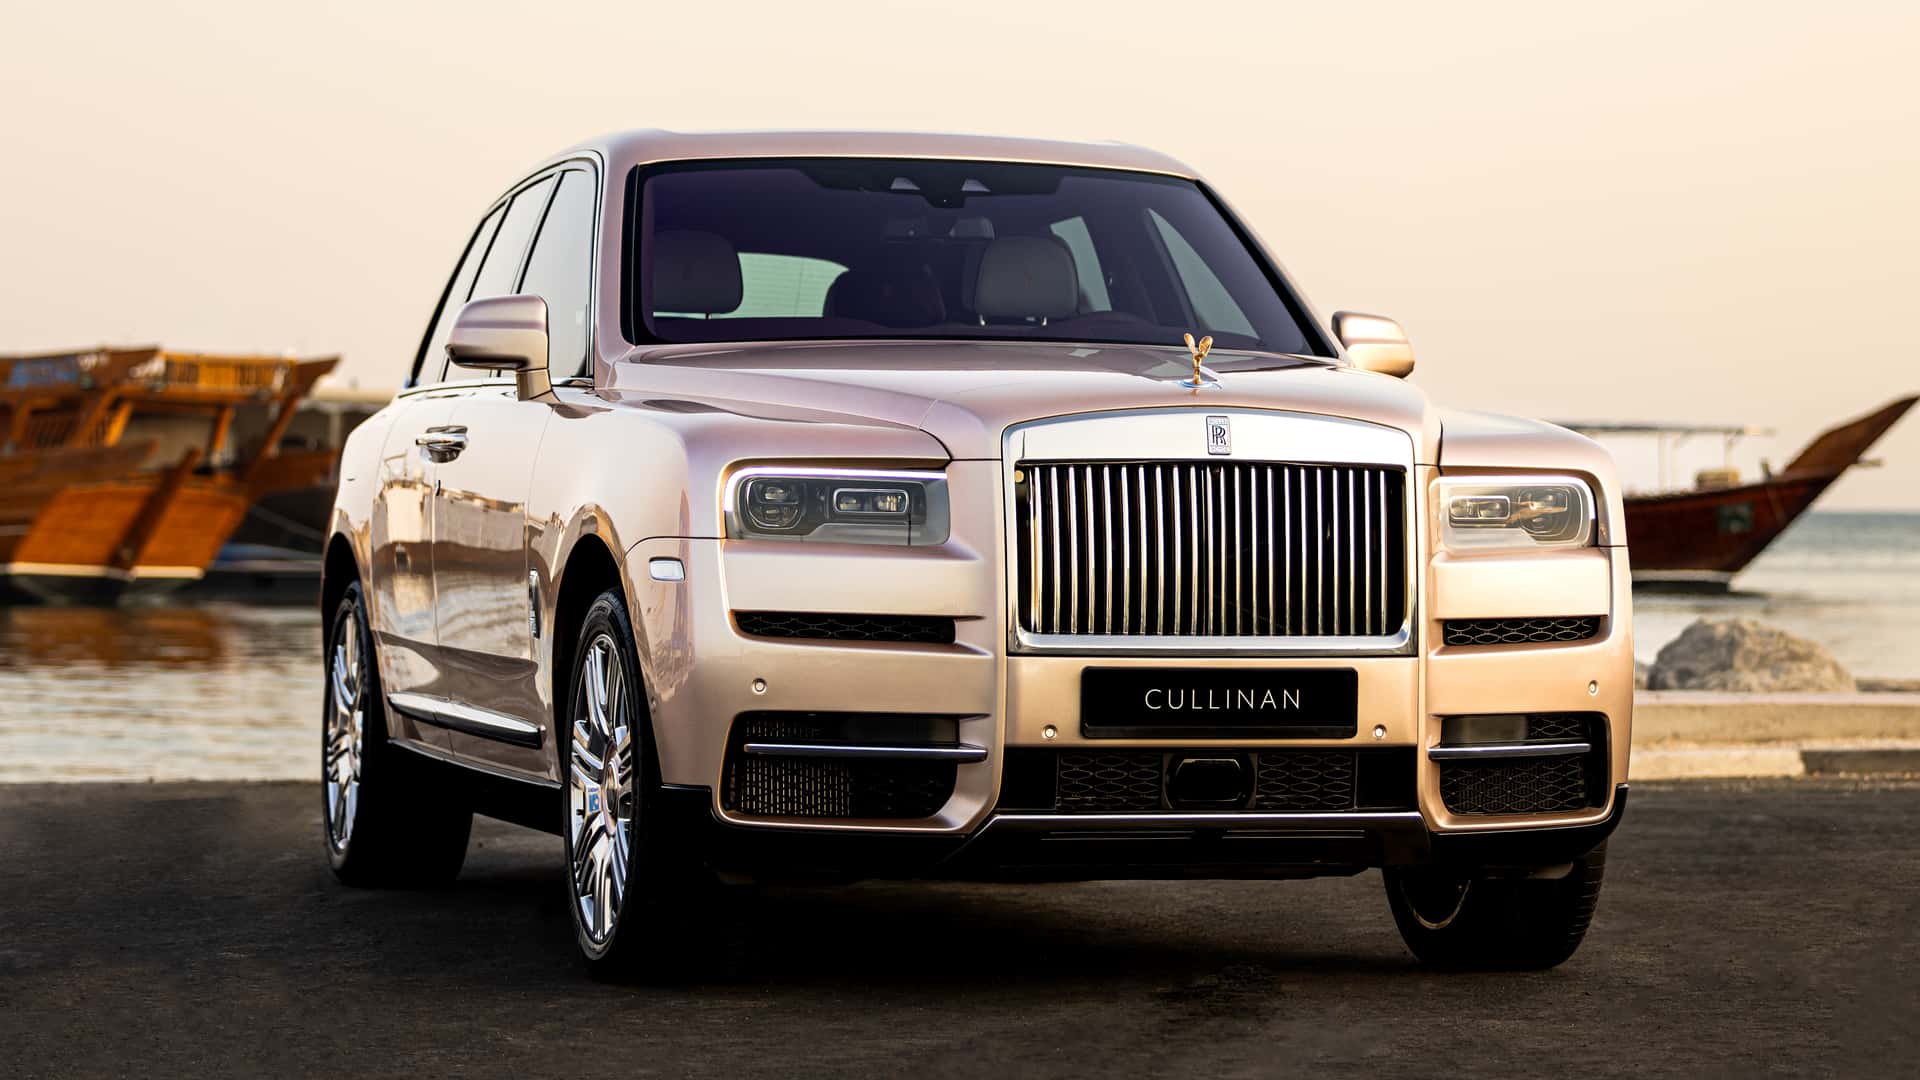 Rolls-Royce cần 30 lần thử nghiệm để "ra lò" chiếc Cullinan có màu sơn đặc biệt